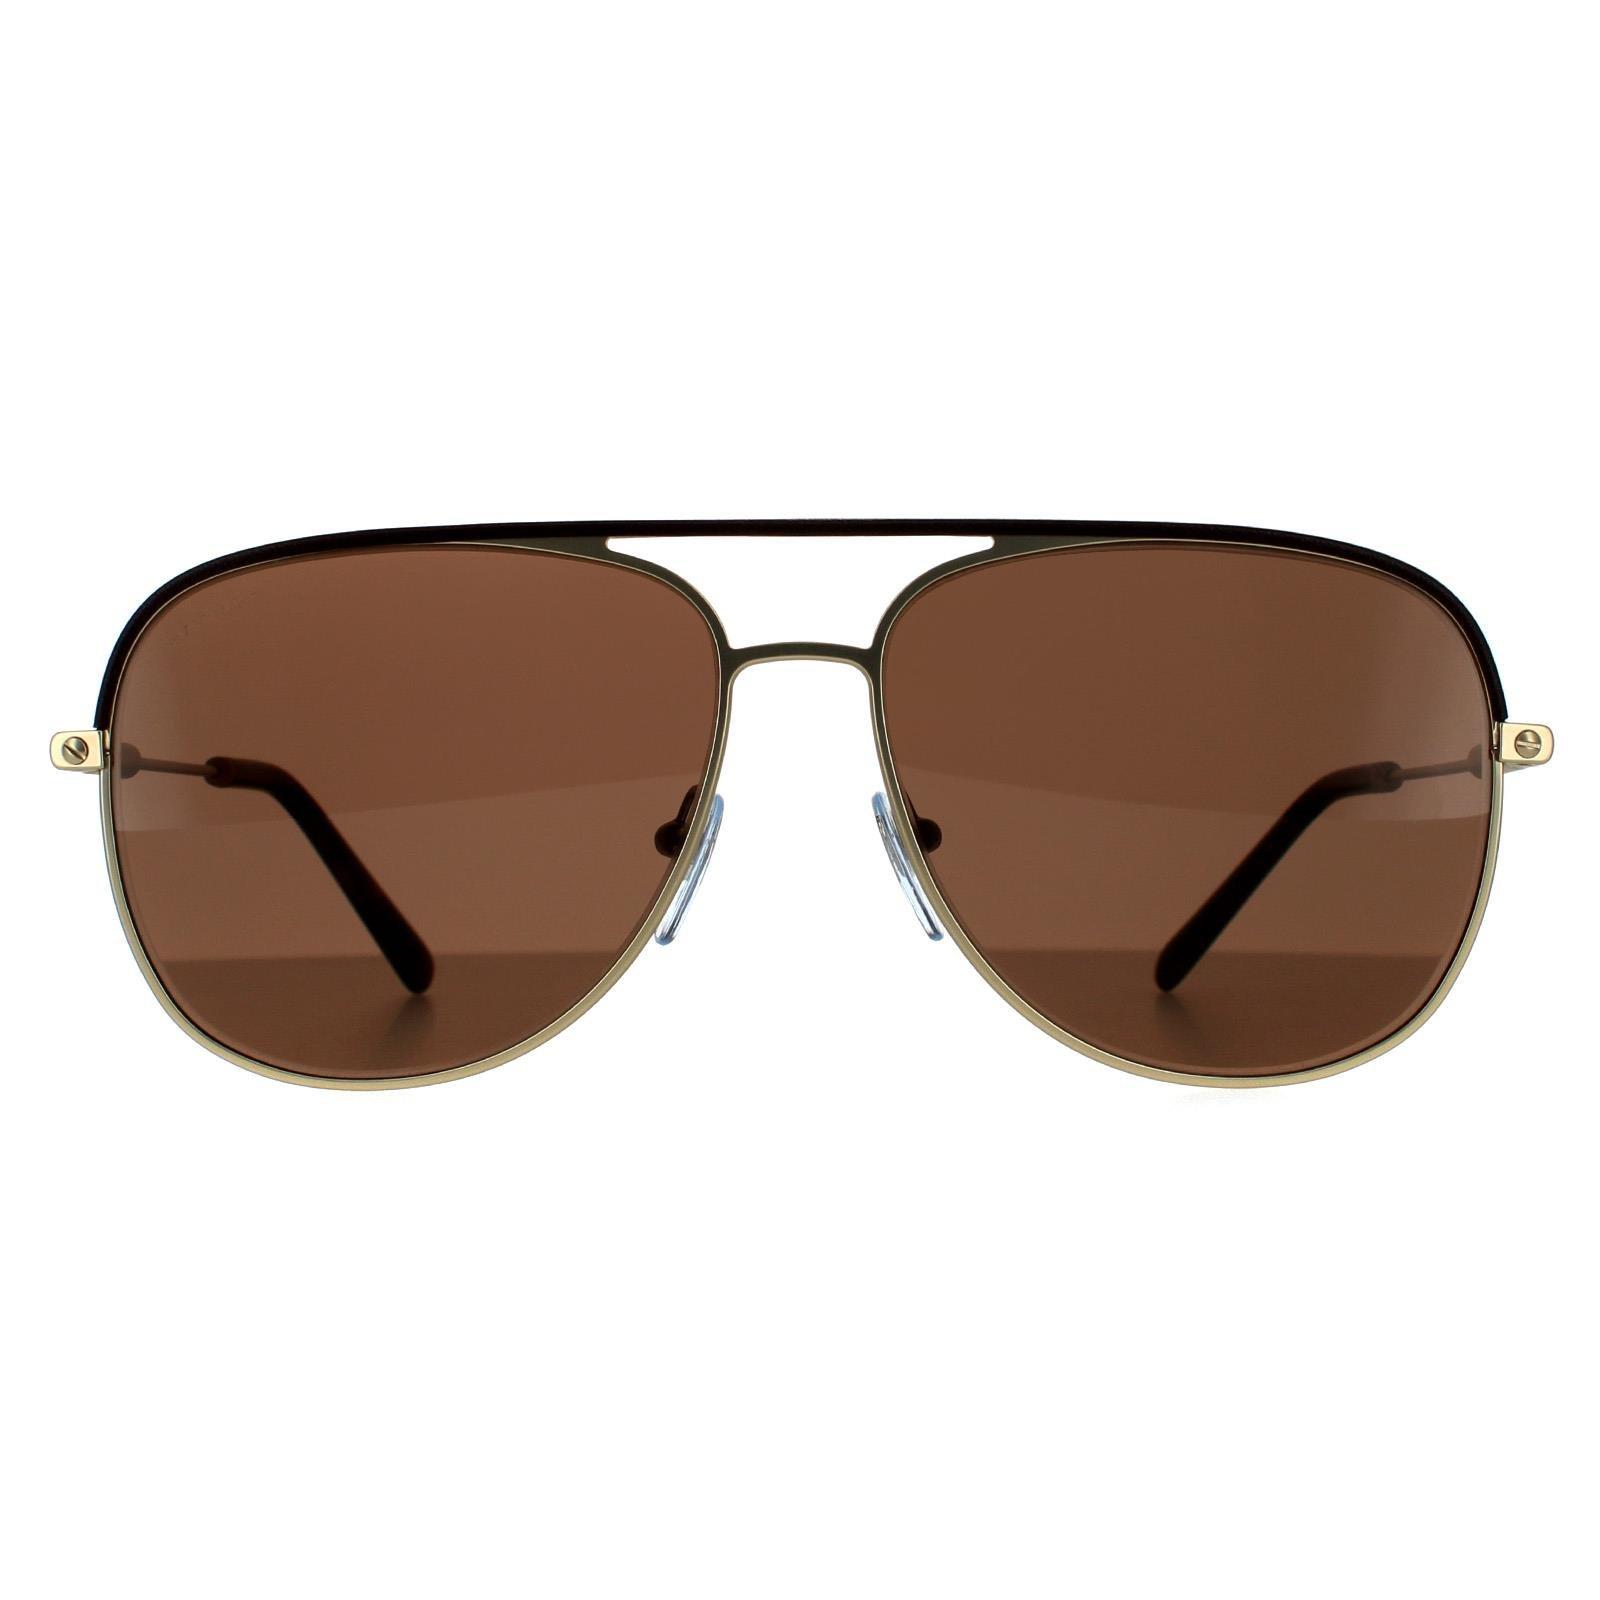 Солнцезащитные очки-авиаторы коричневого цвета и матового бледно-золотистого цвета Bvlgari, золото